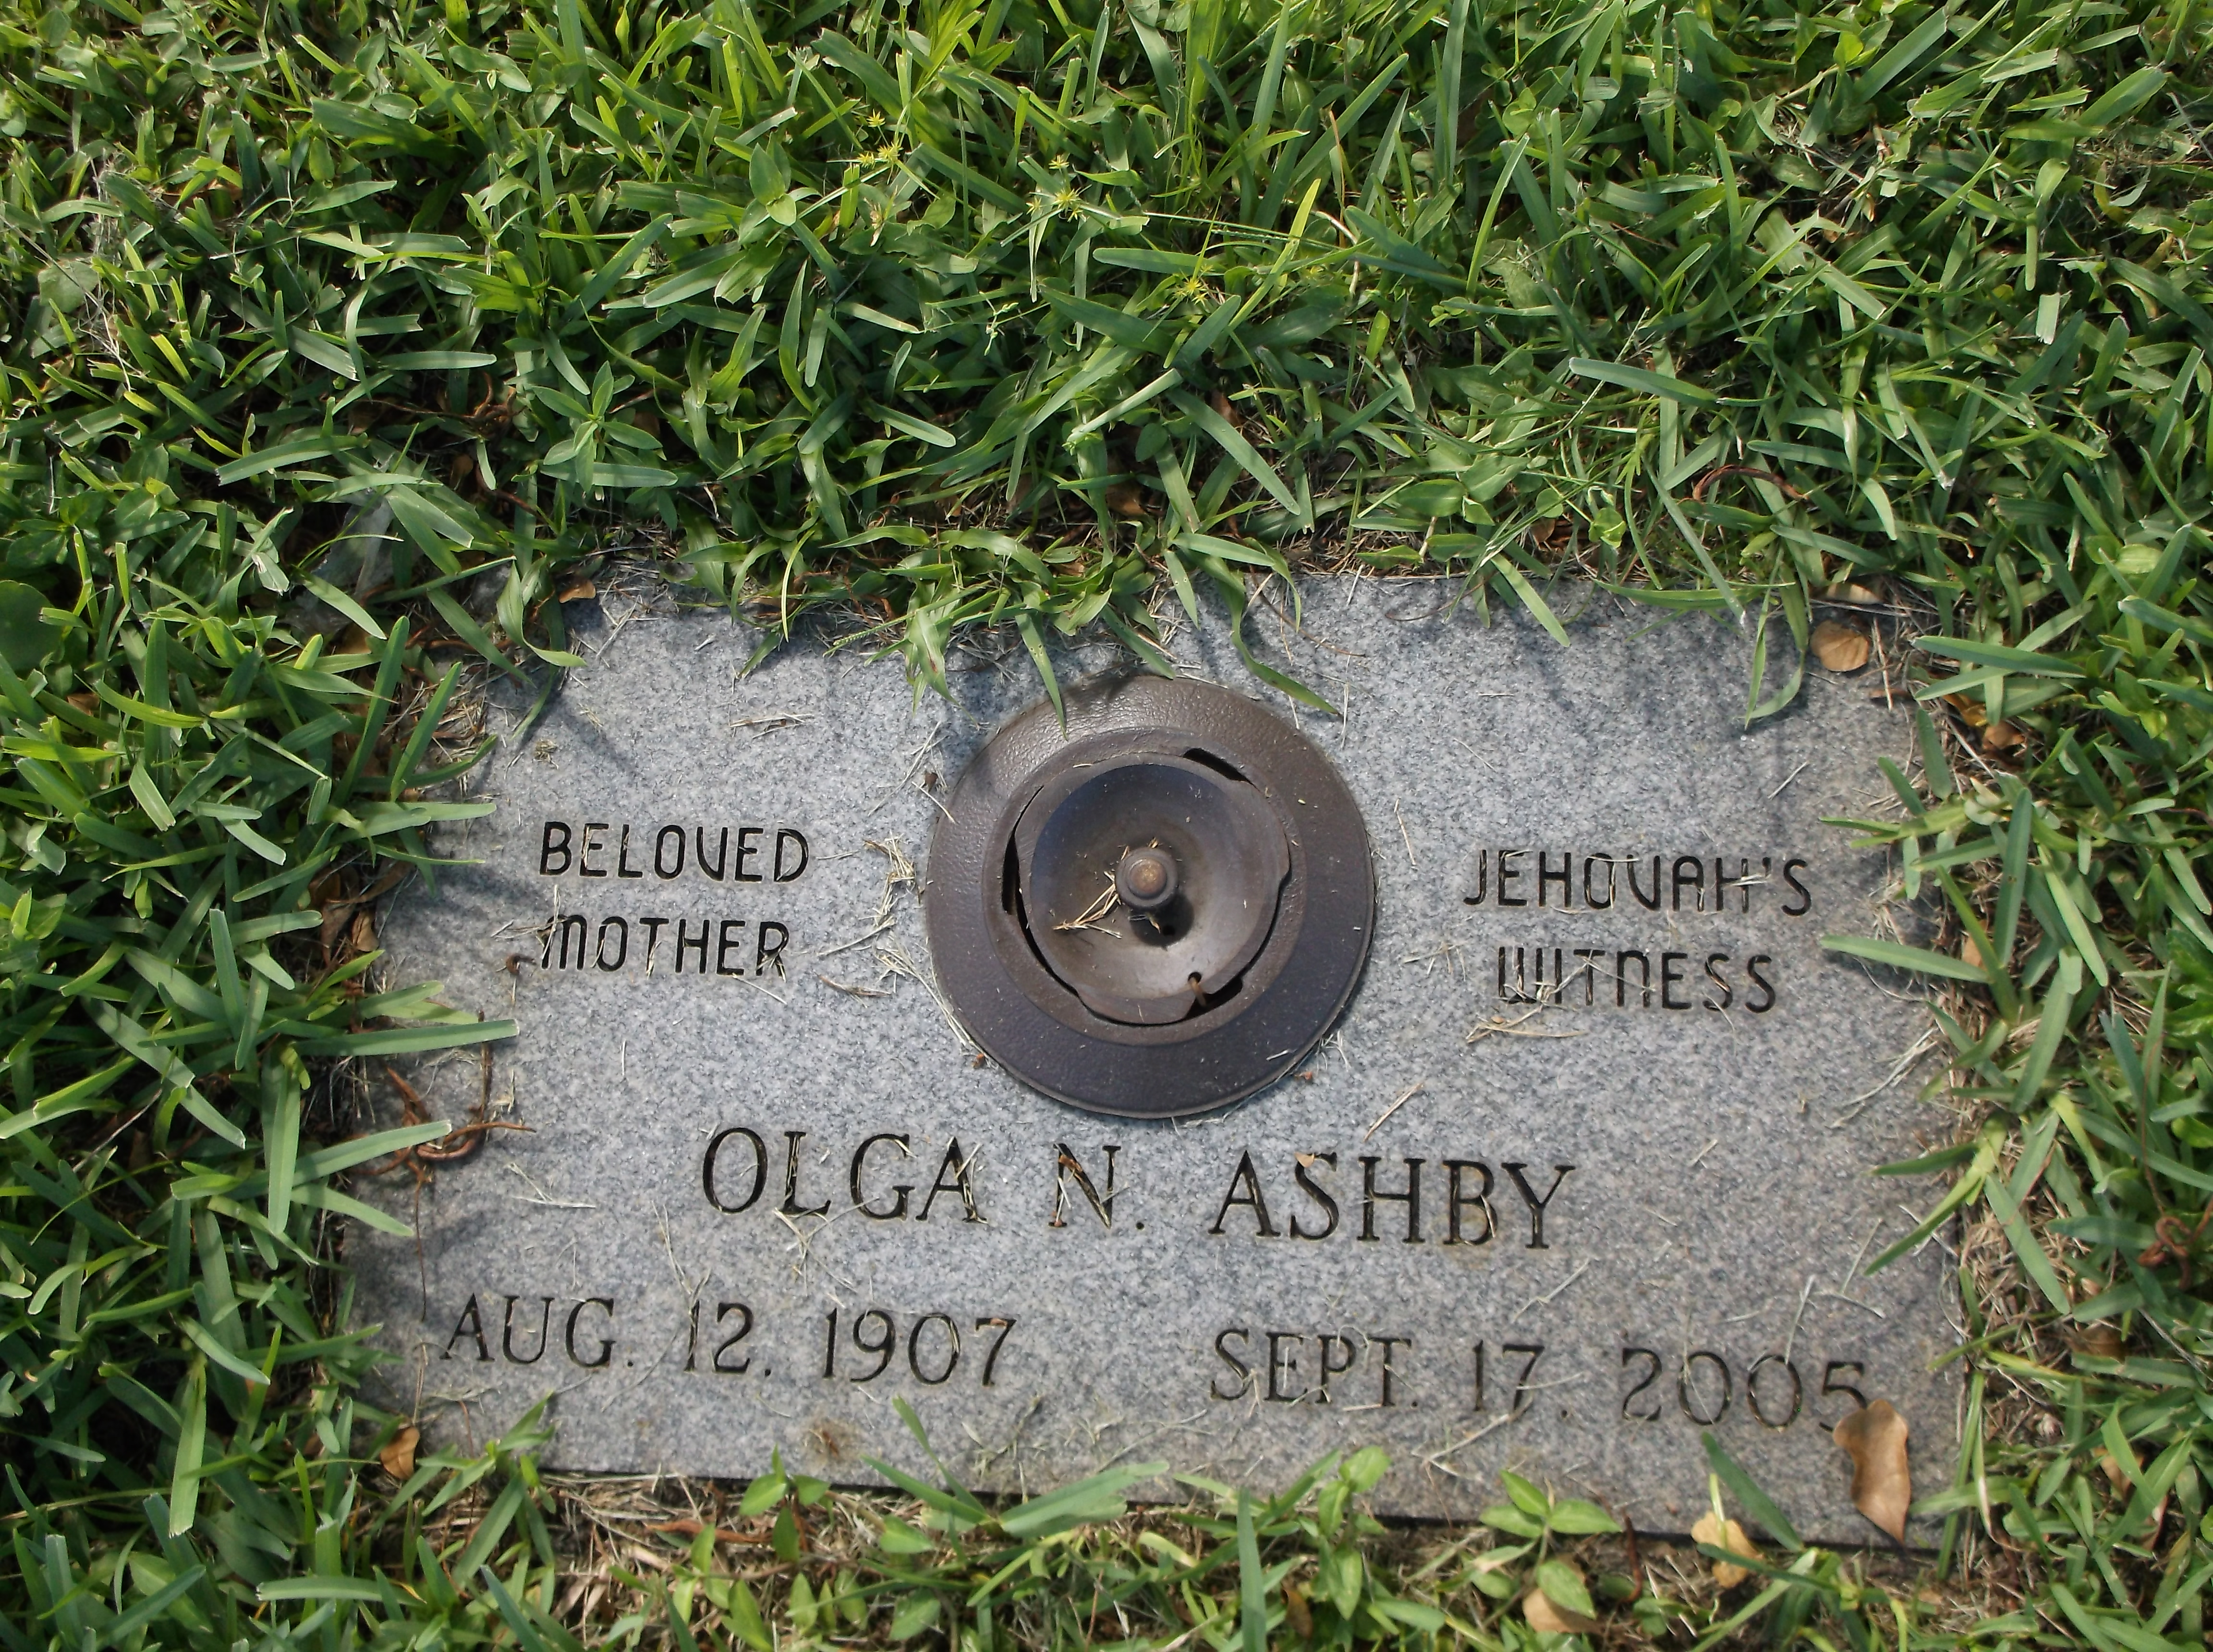 Olga N Ashby